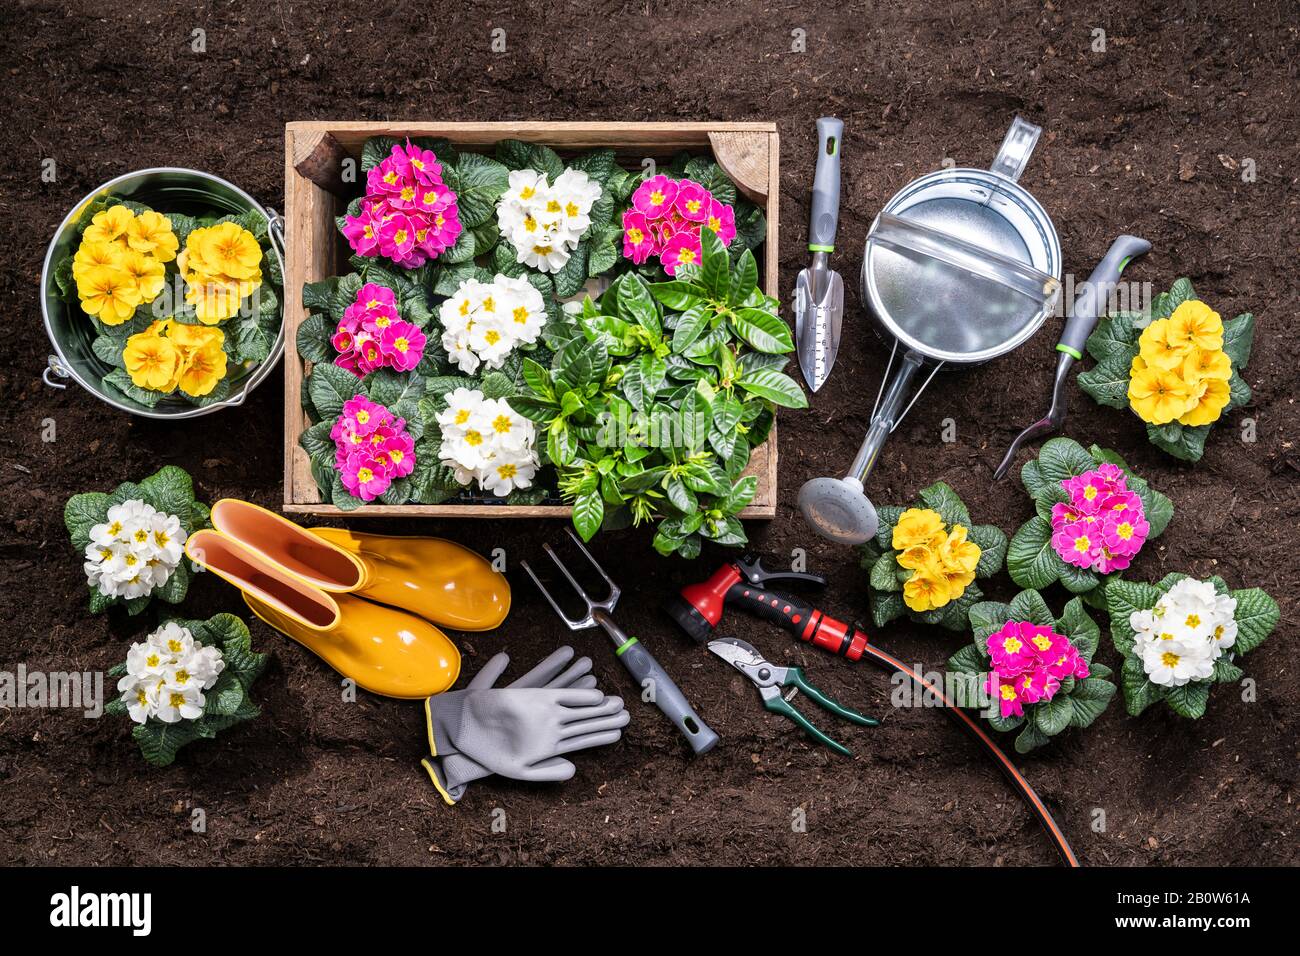 Giardinaggio Attrezzi E Vasi Di Fiori Pronti Per Essere Piantati In Giardino Foto Stock